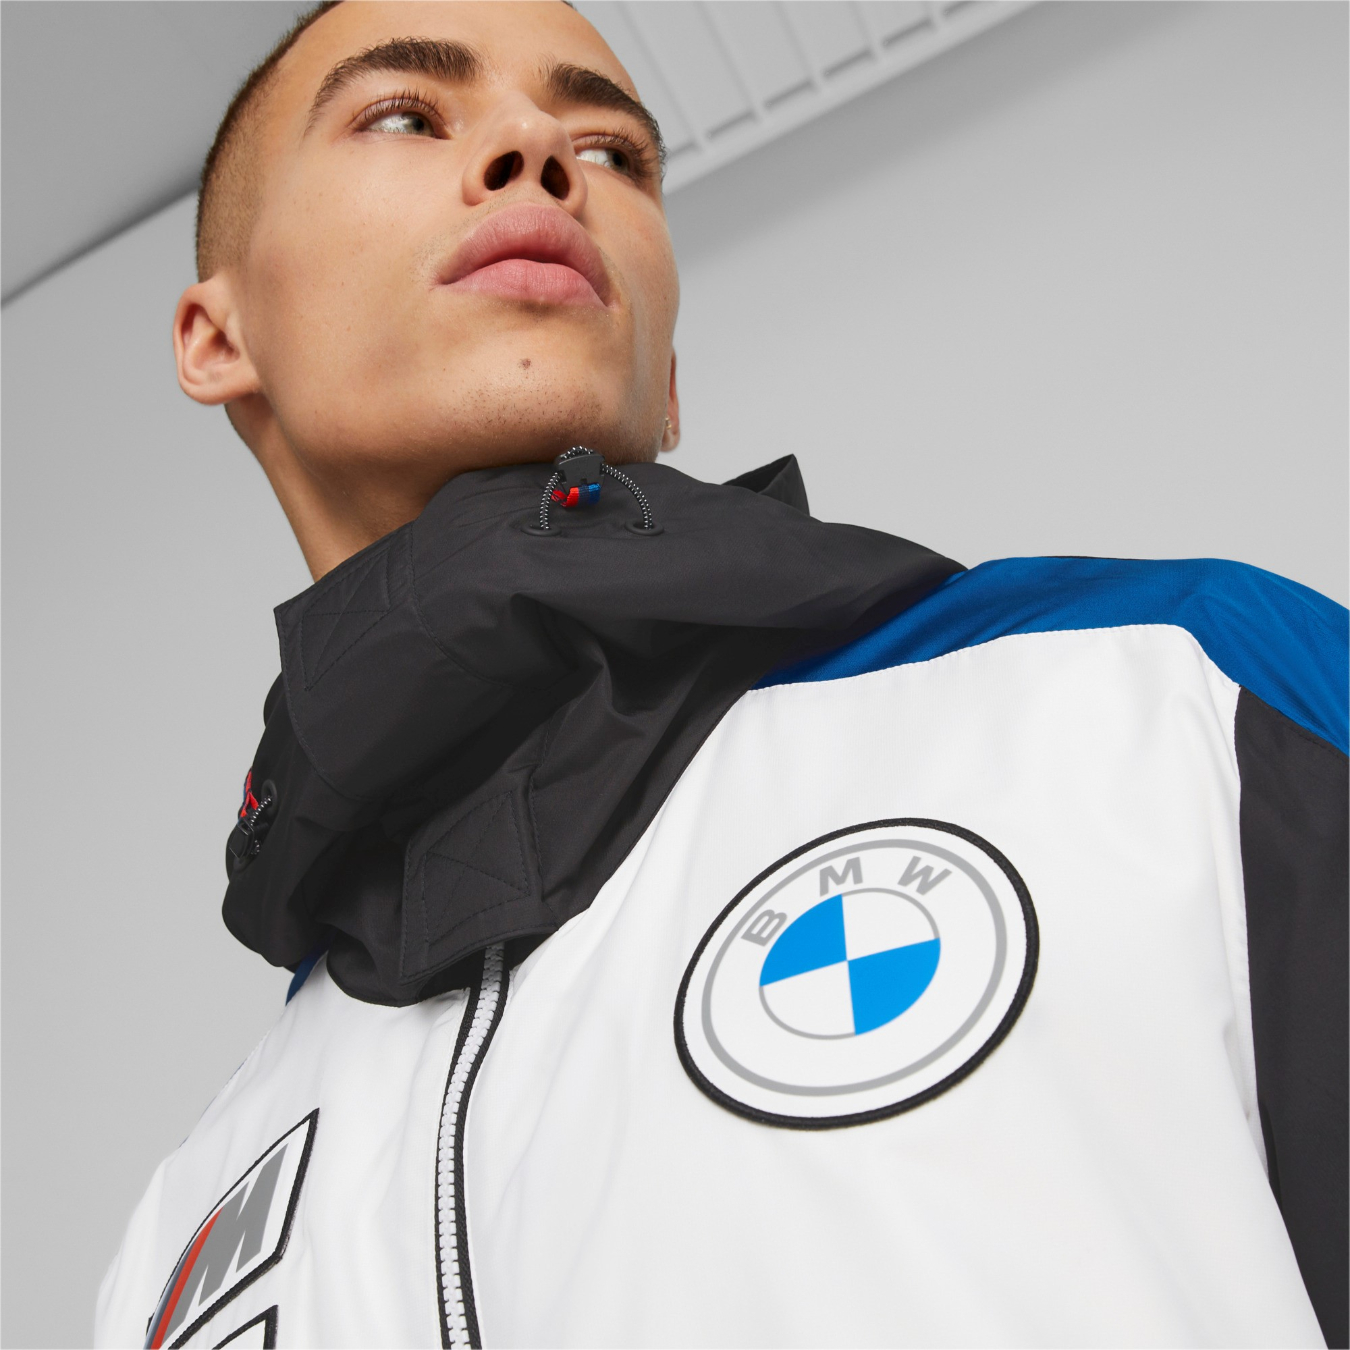 Veste BMW MOTORSPORT Puma Race noire pour homme